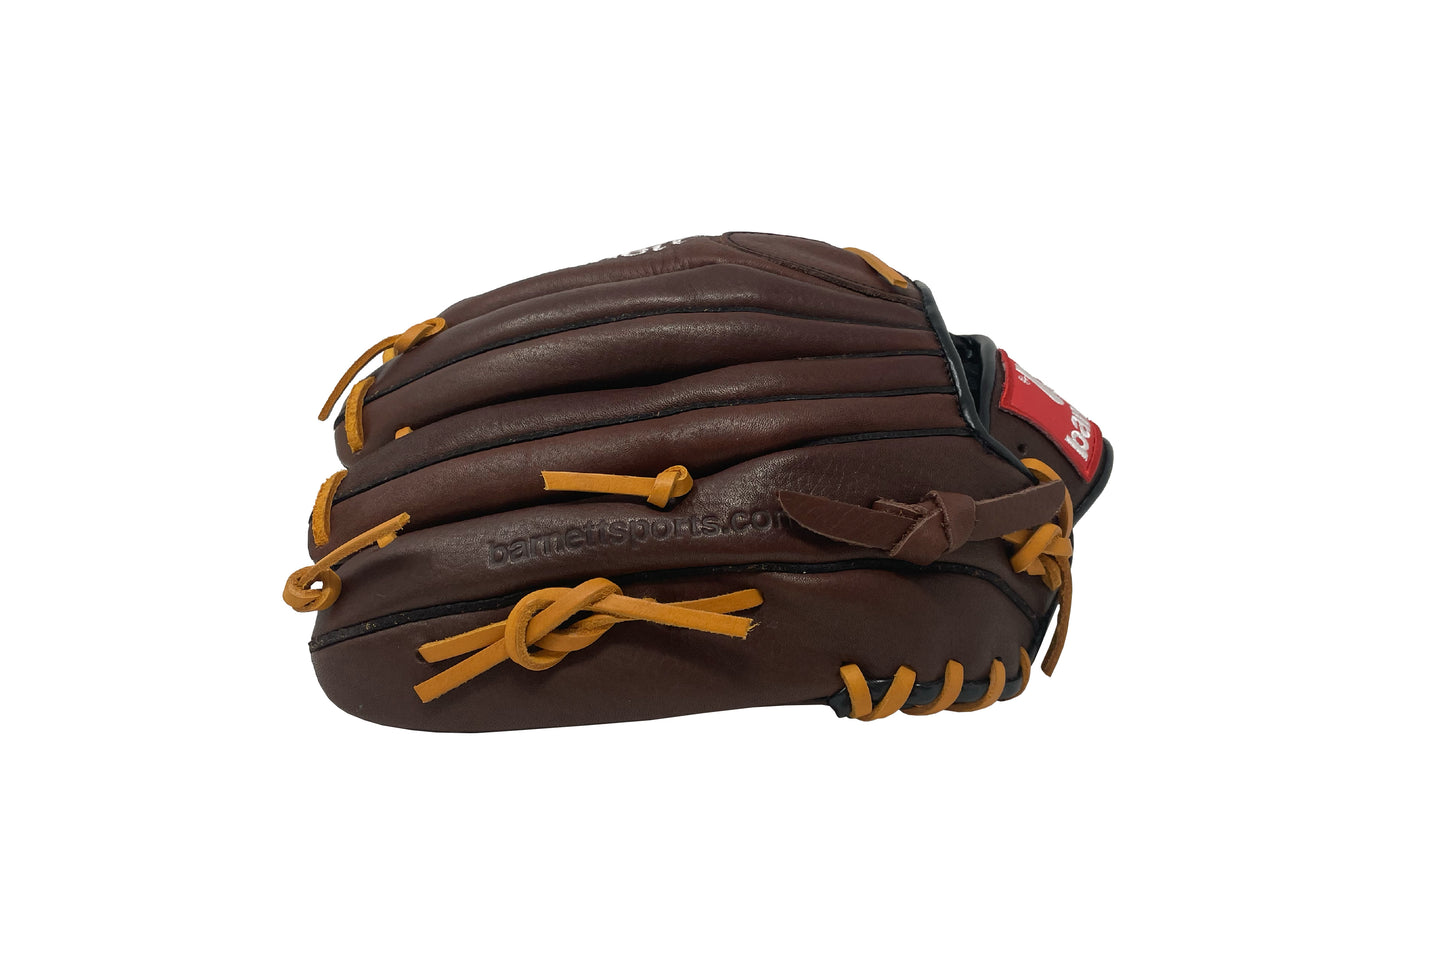 Gant de baseball de compétition GL-125, cuir véritable, champ extérieur 12,5, marron